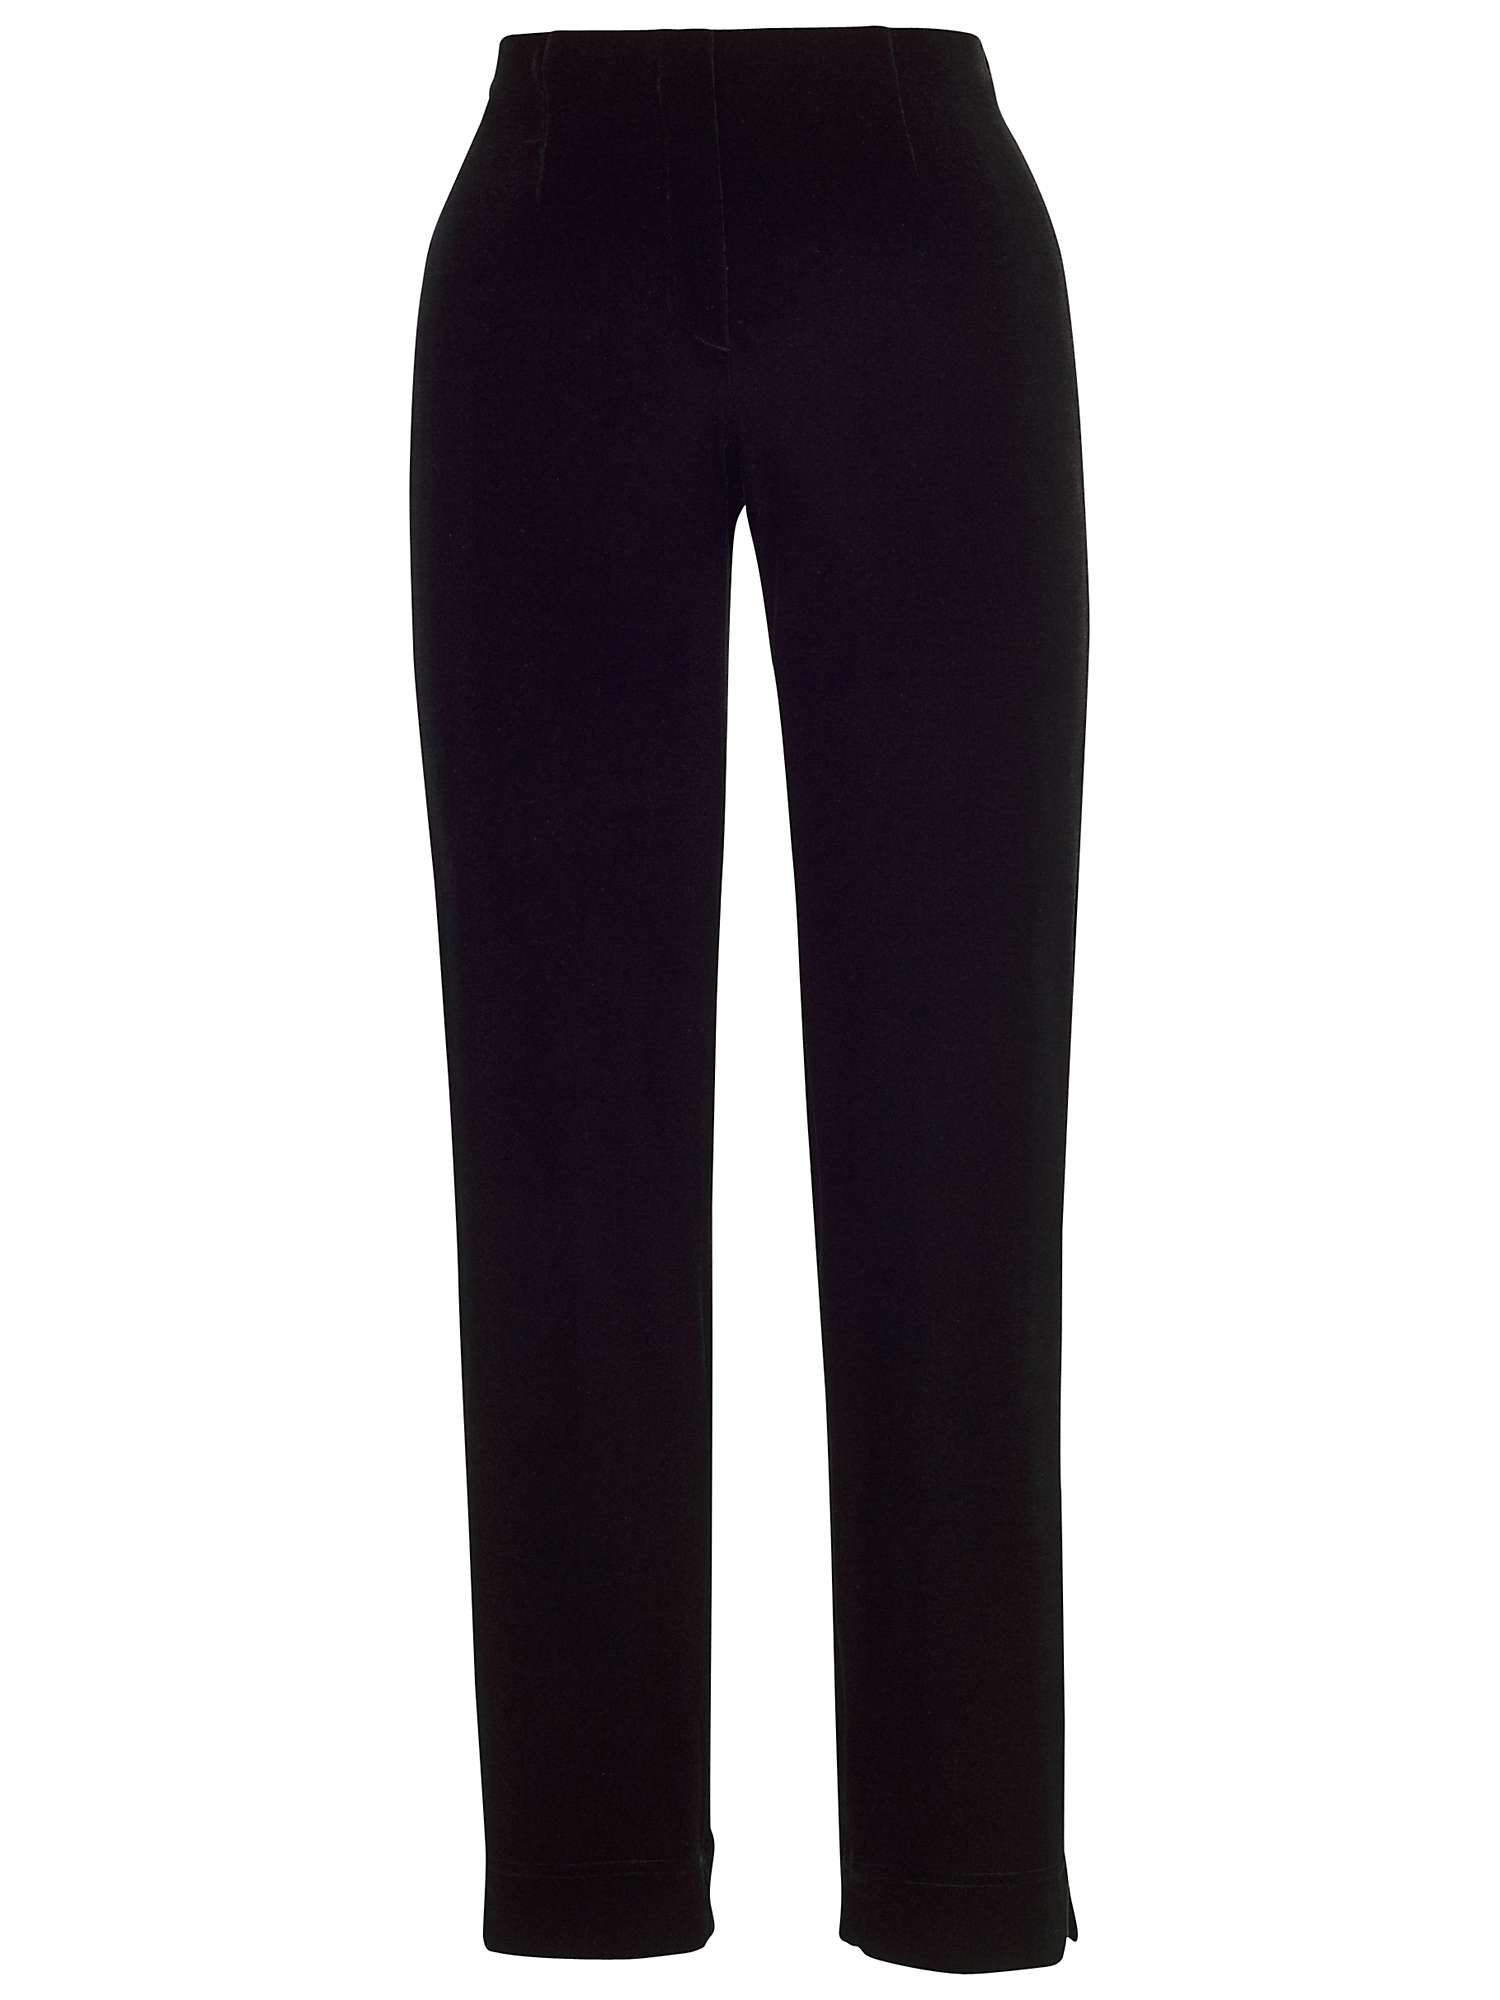 Buy Chesca Velvet Pull On Trousers, Black Online at johnlewis.com